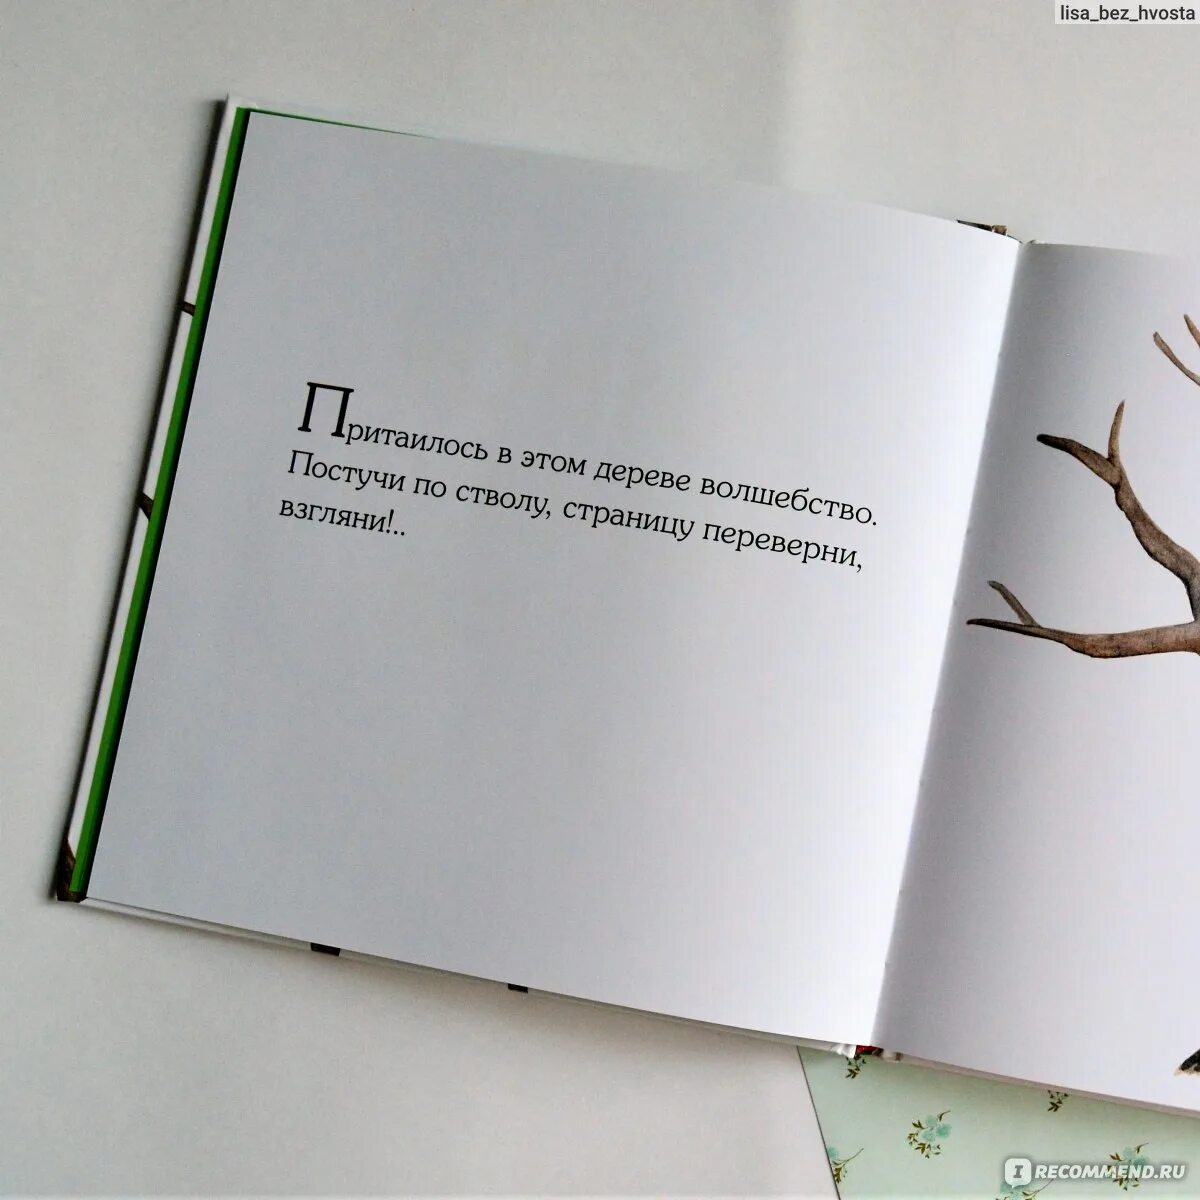 Переверни страницу 2. Живое дерево книга. Кристи Матесон живое дерево. Перевернуть страницу цитата. Цитата переверни страницу.